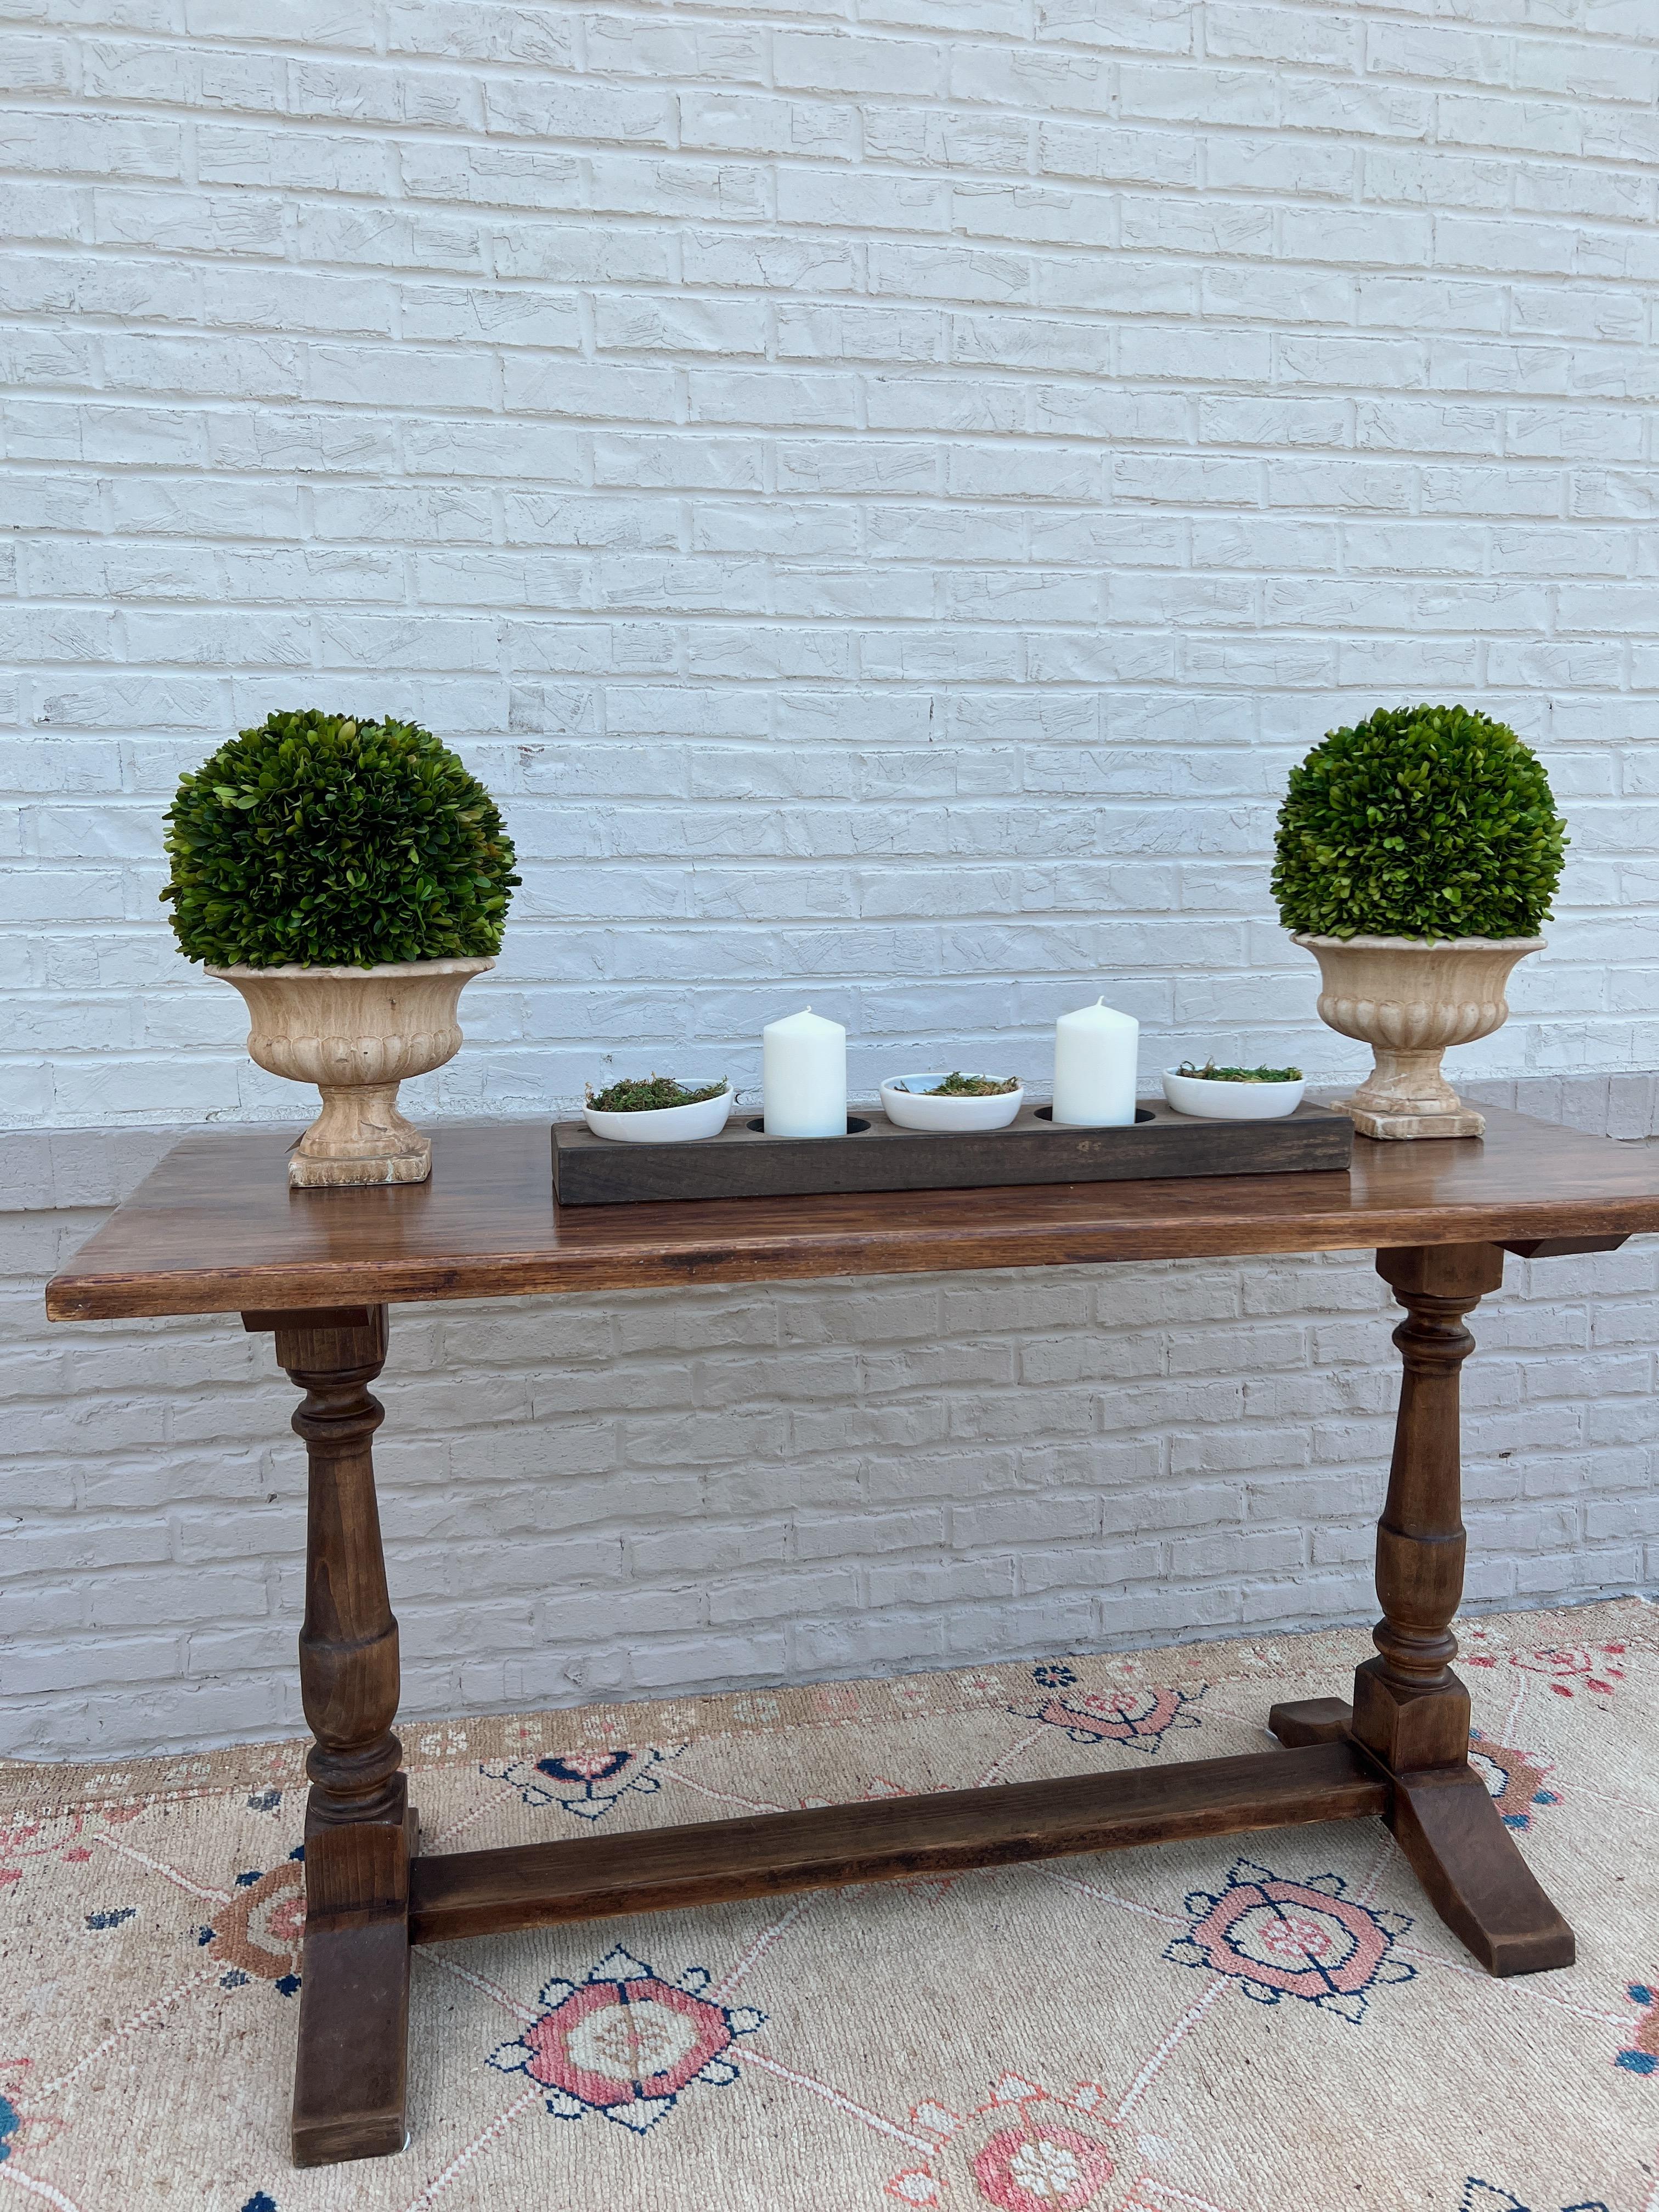 CIRCA 1920er Jahre Frankreich.

Dieser schöne Tisch aus Eichenholz zeigt die Eleganz des französischen Stils und die Einflüsse eines klassischen Designs. Dieser Tisch hat eine wunderschöne Platte mit zwei geschnitzten, stabilen Holzbeinen, die mit